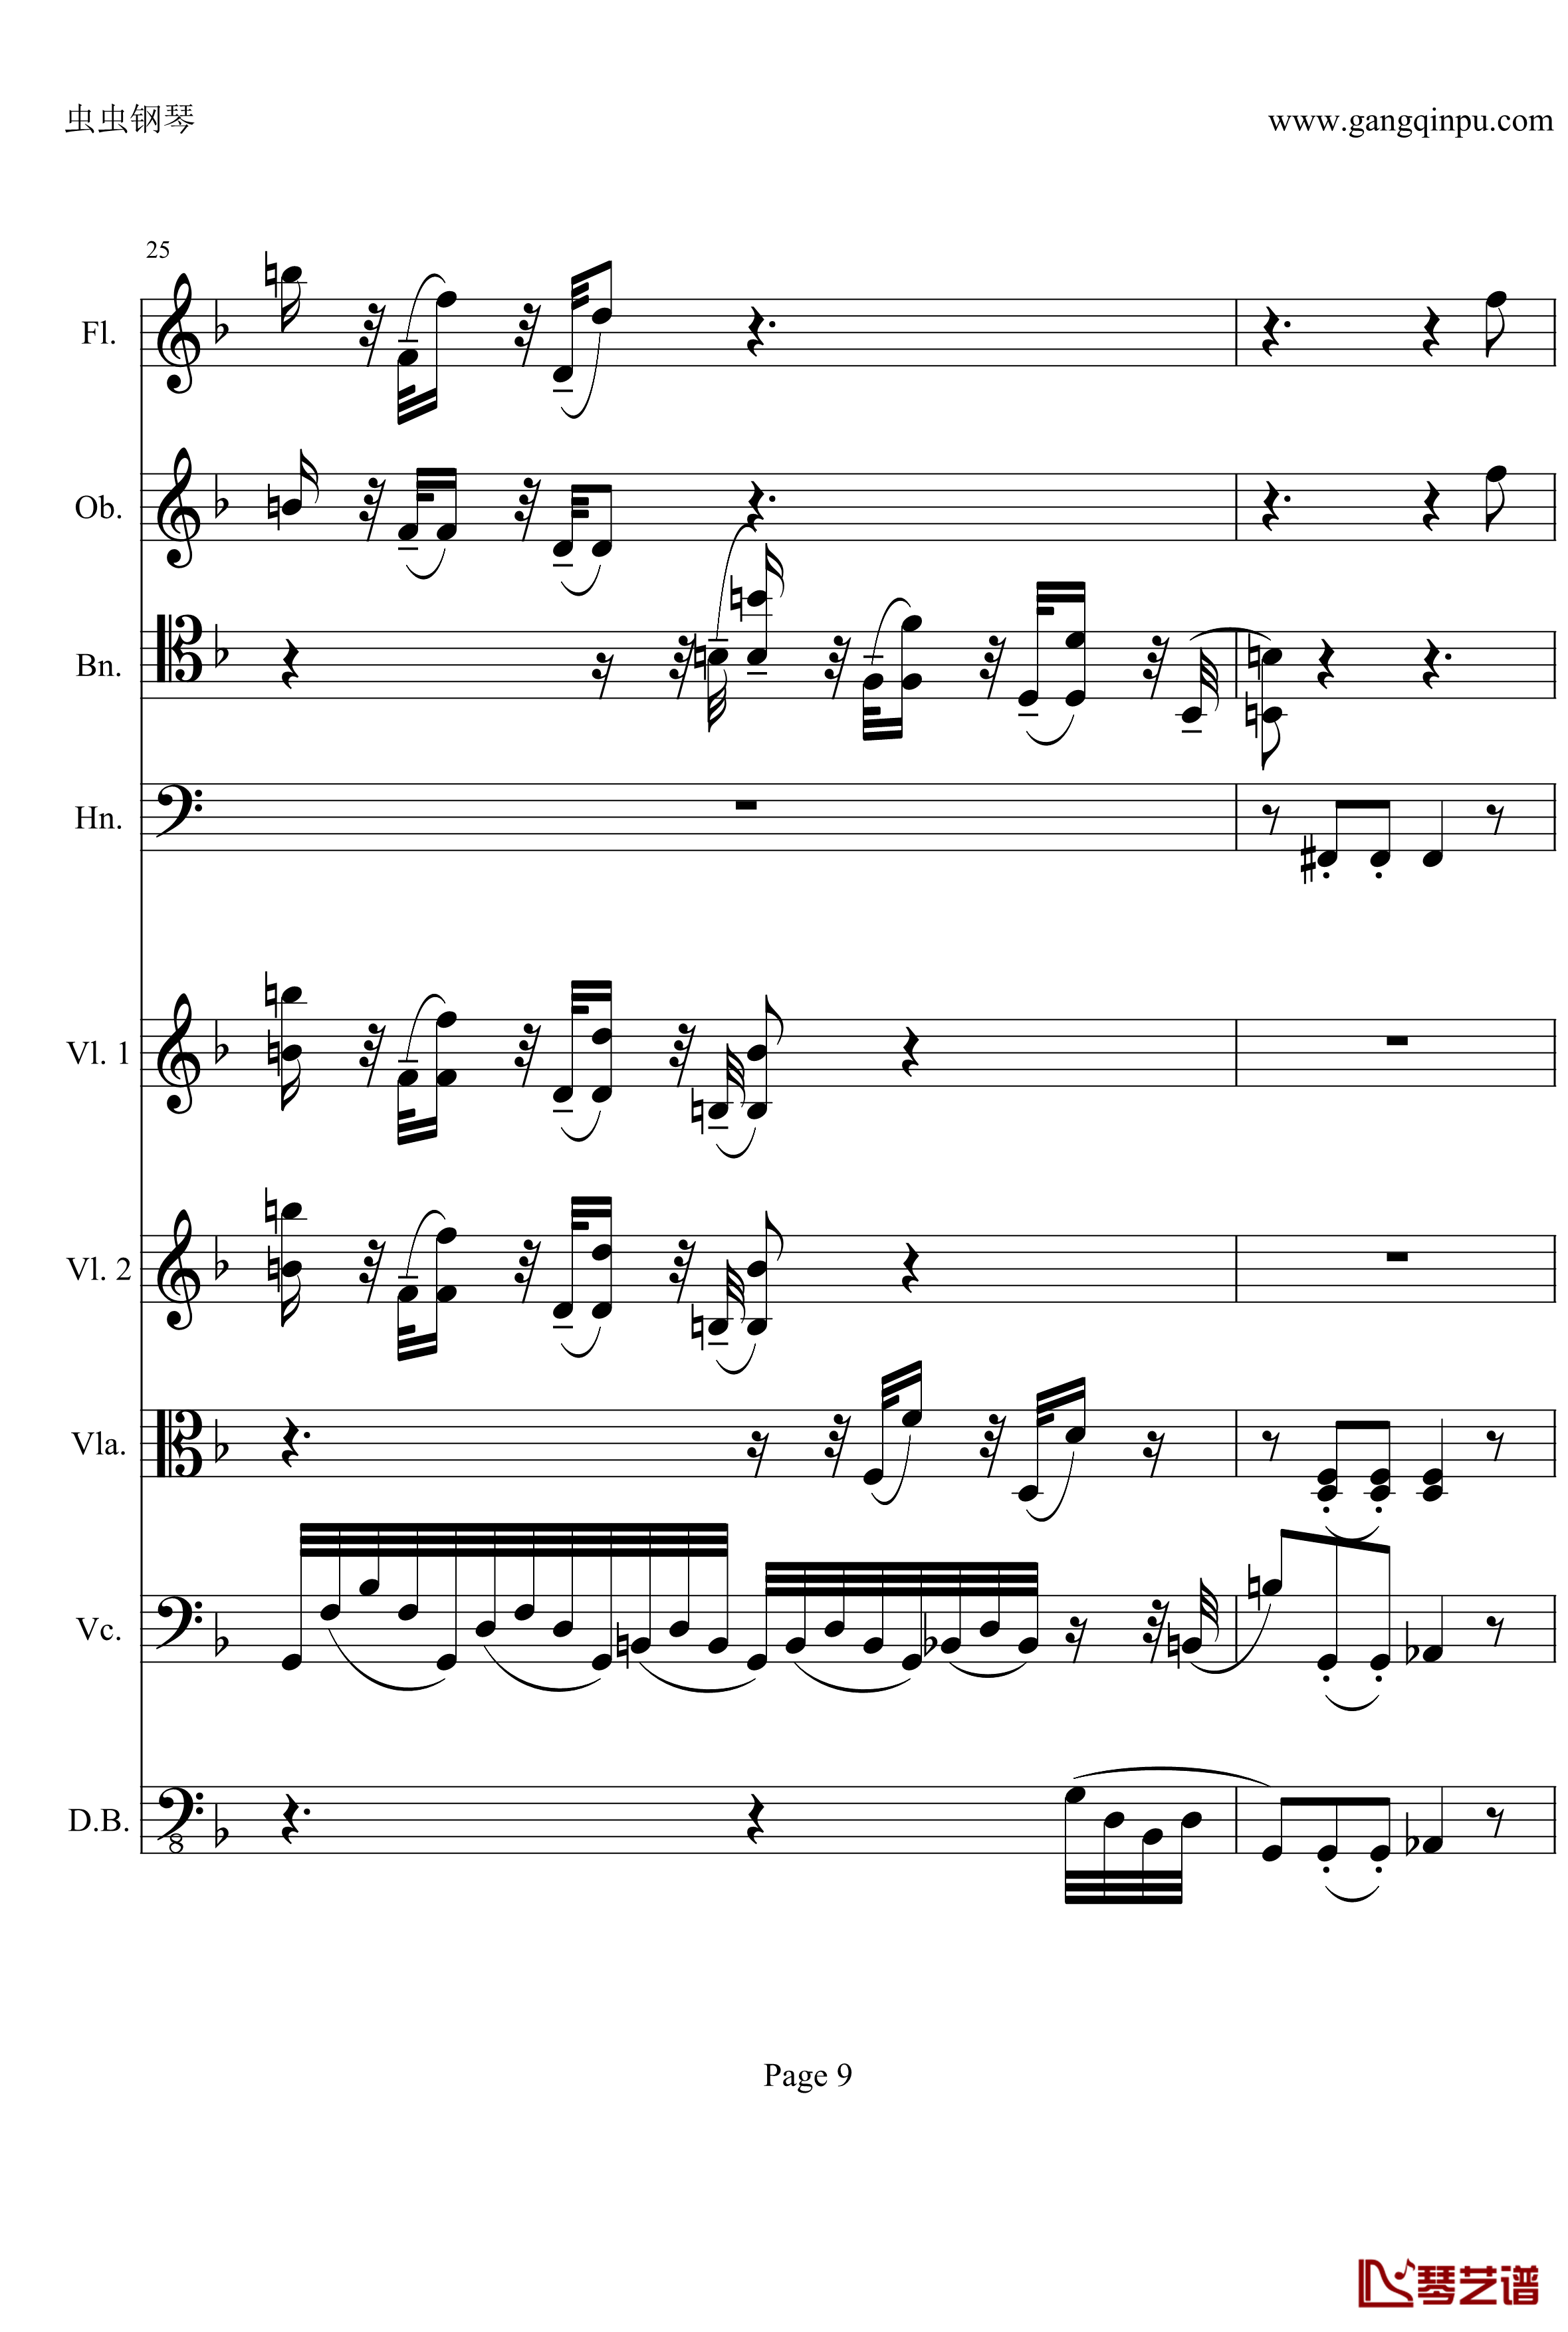 奏鸣曲之交响钢琴谱-第21-Ⅱ-贝多芬-beethoven9